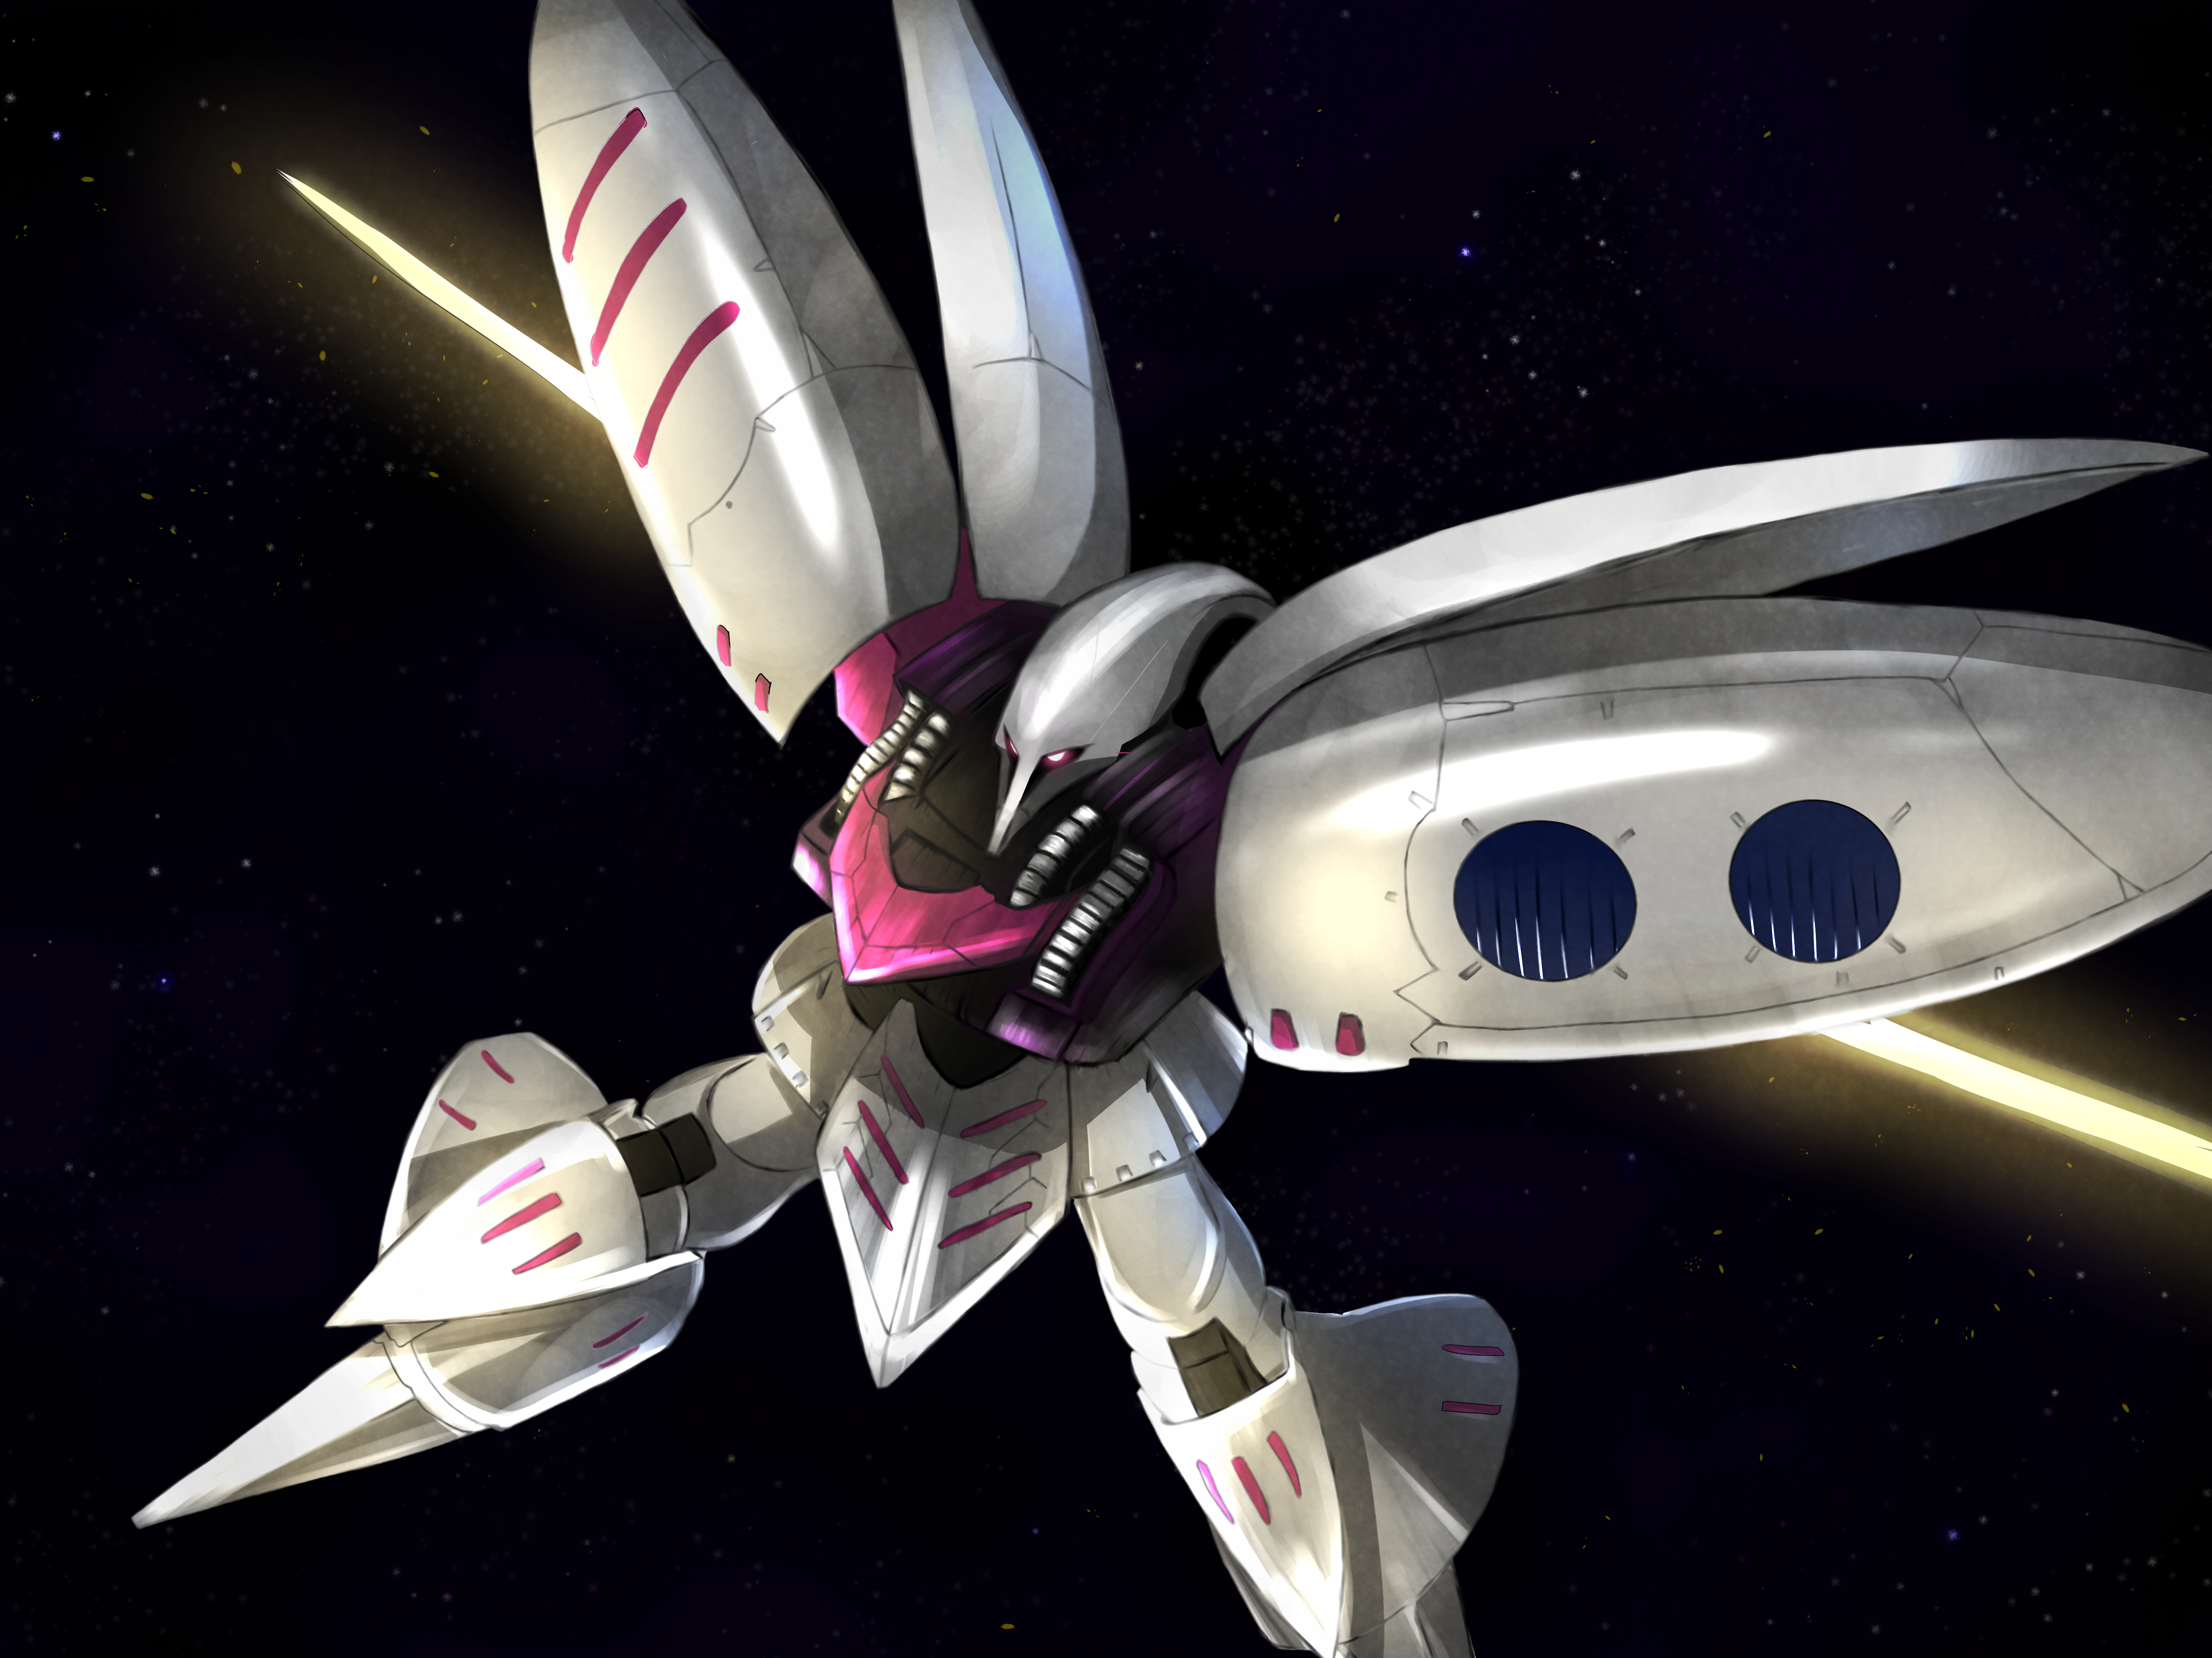 Mobile Suit Mobile Suit Zeta Gundam Mobile Suit Gundam ZZ Qubeley Anime Mechs Super Robot Wars Artwo 5304x3976